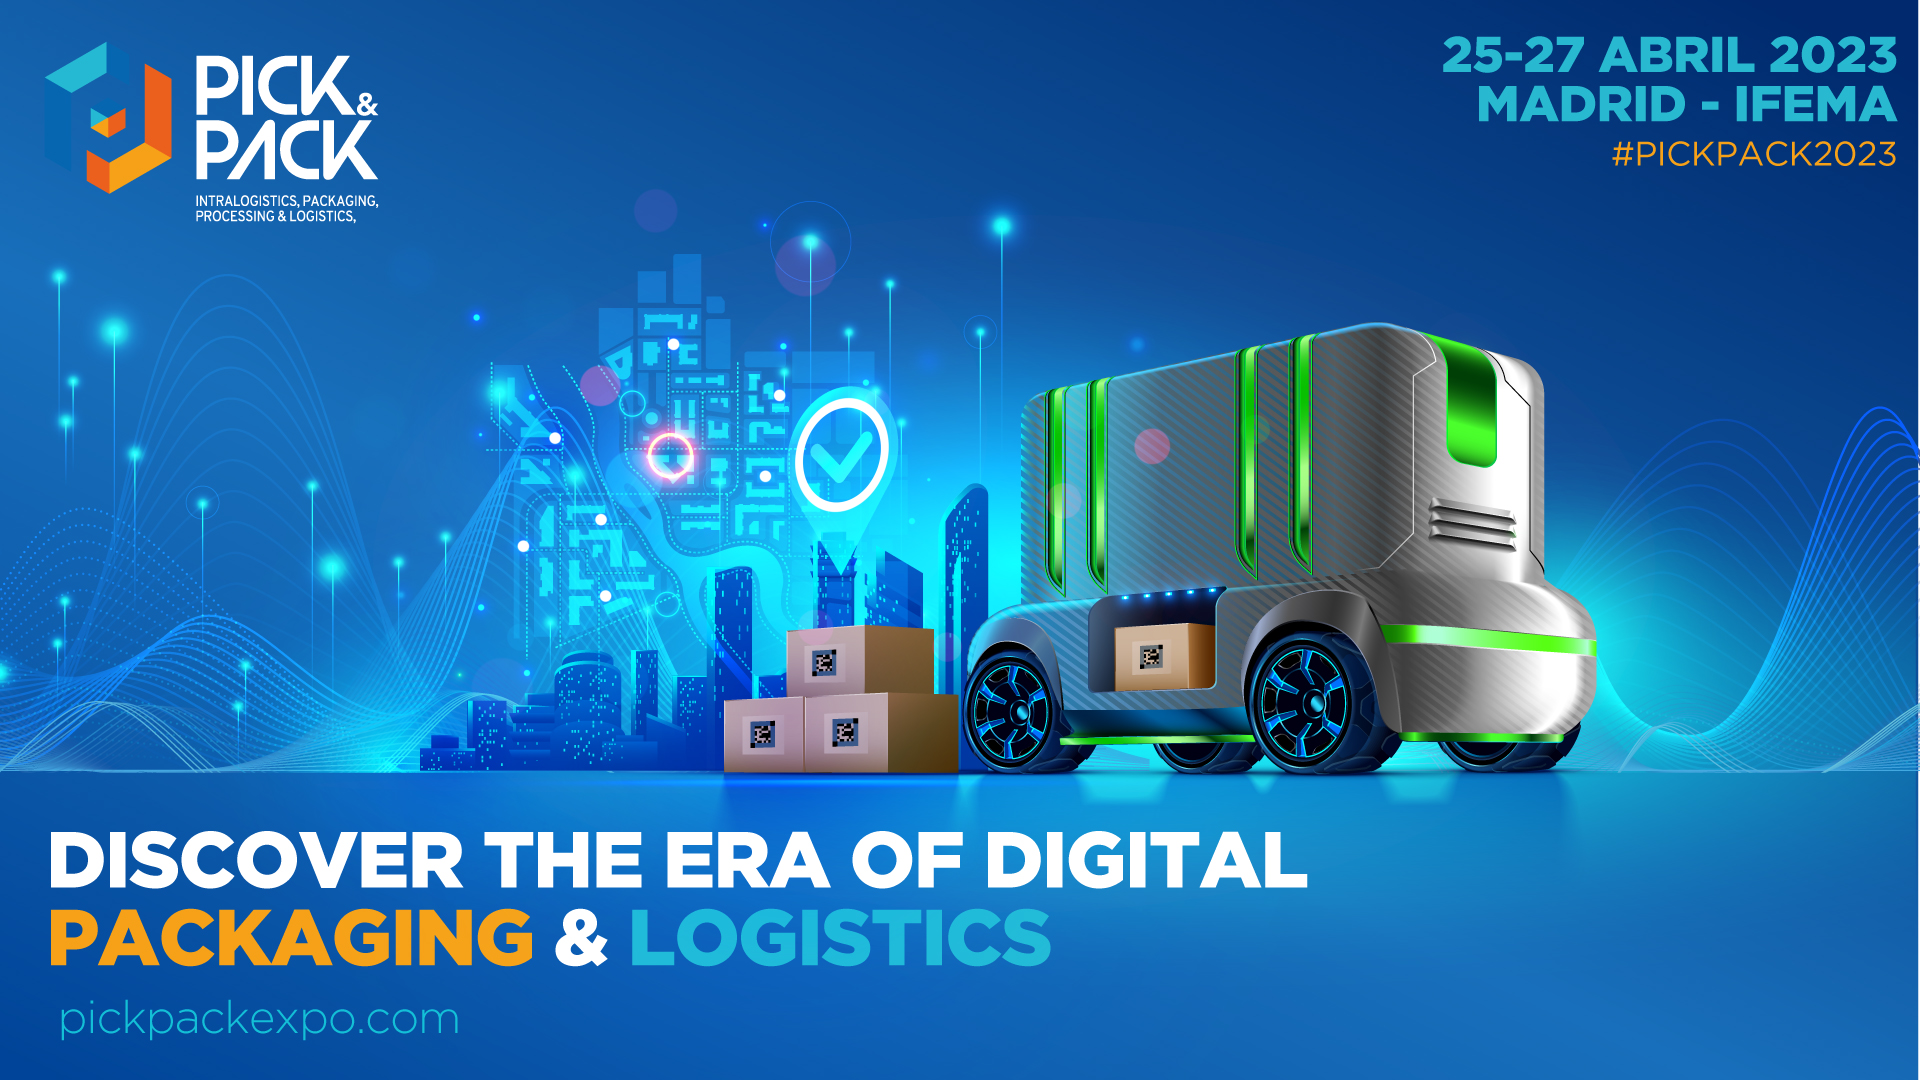 Más de 6.000 profesionales industriales descubrirán en Pick&Pack 2023 la revolución digital y sostenible de la logística, intralogística y packaging